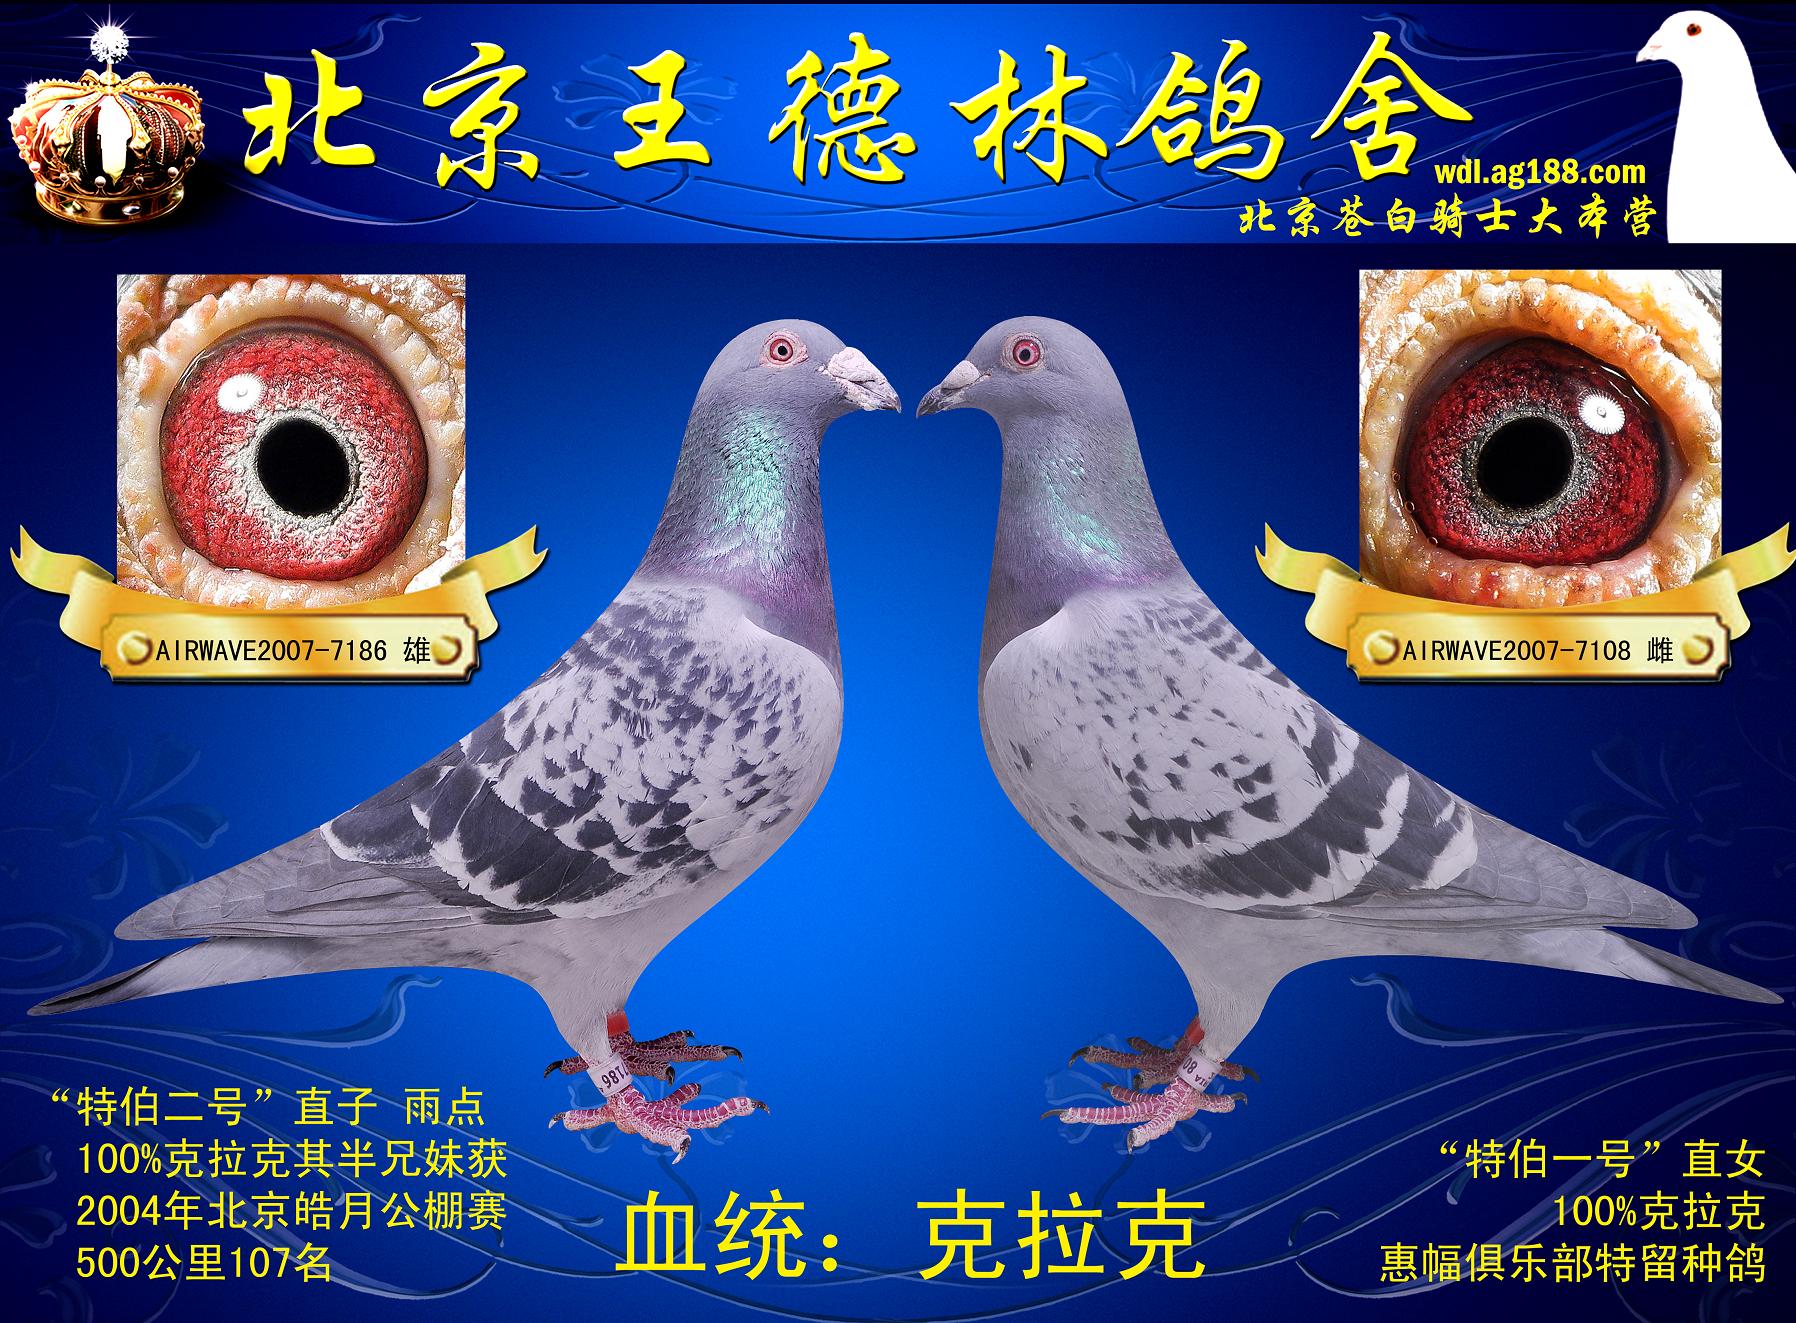 杨阿腾 - 北京爱宇赛鸽